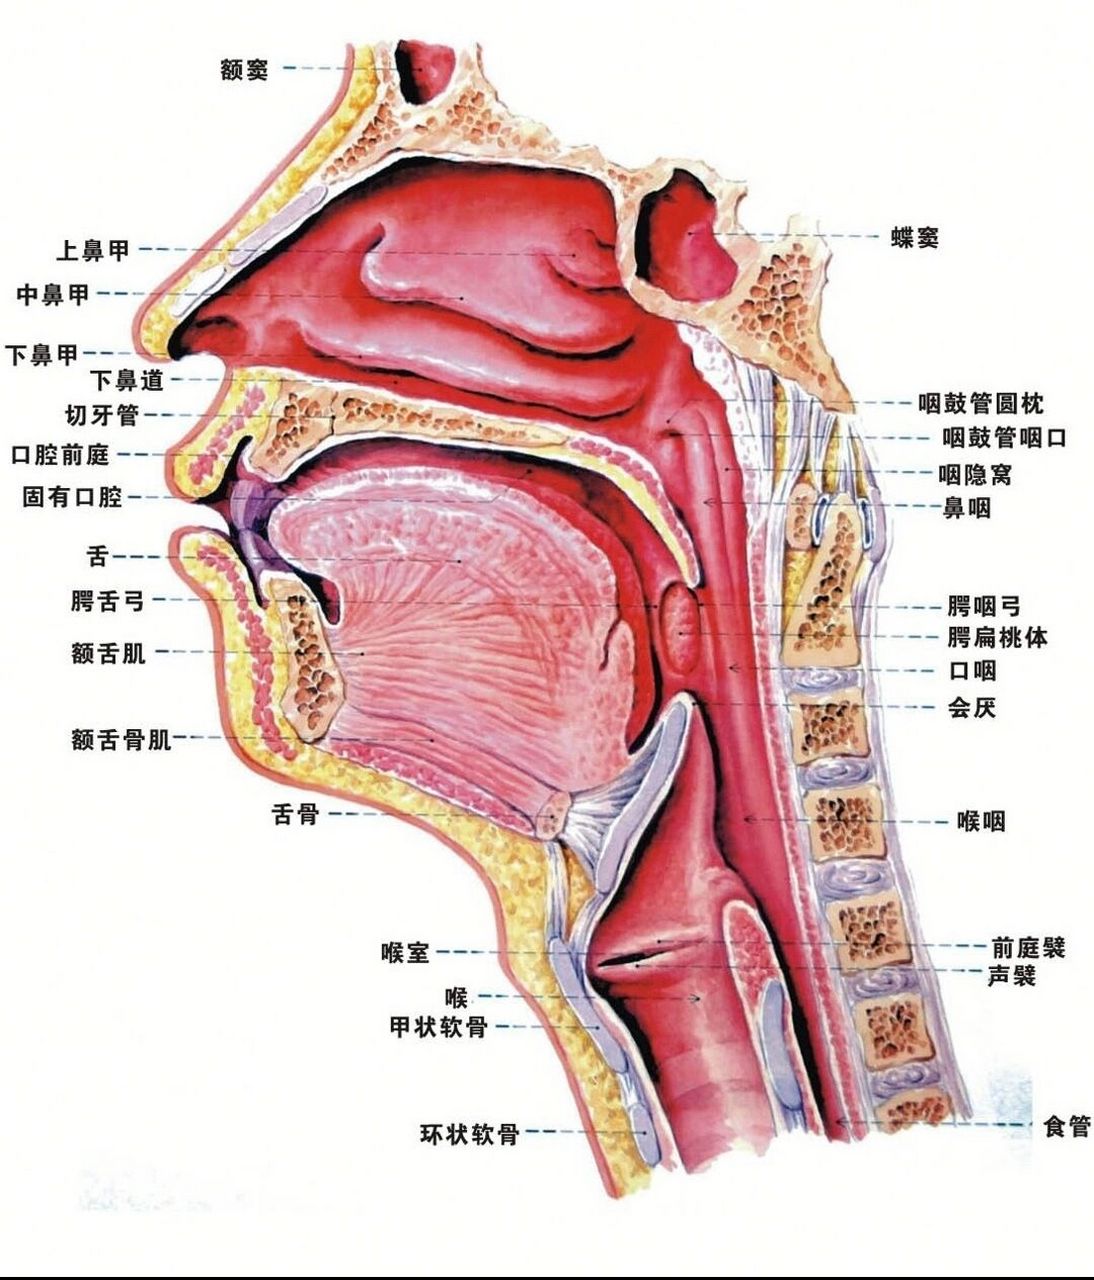 喉位于颈前部中份,喉咽的前方,上界为会厌上缘(平对第2～3颈椎之间)